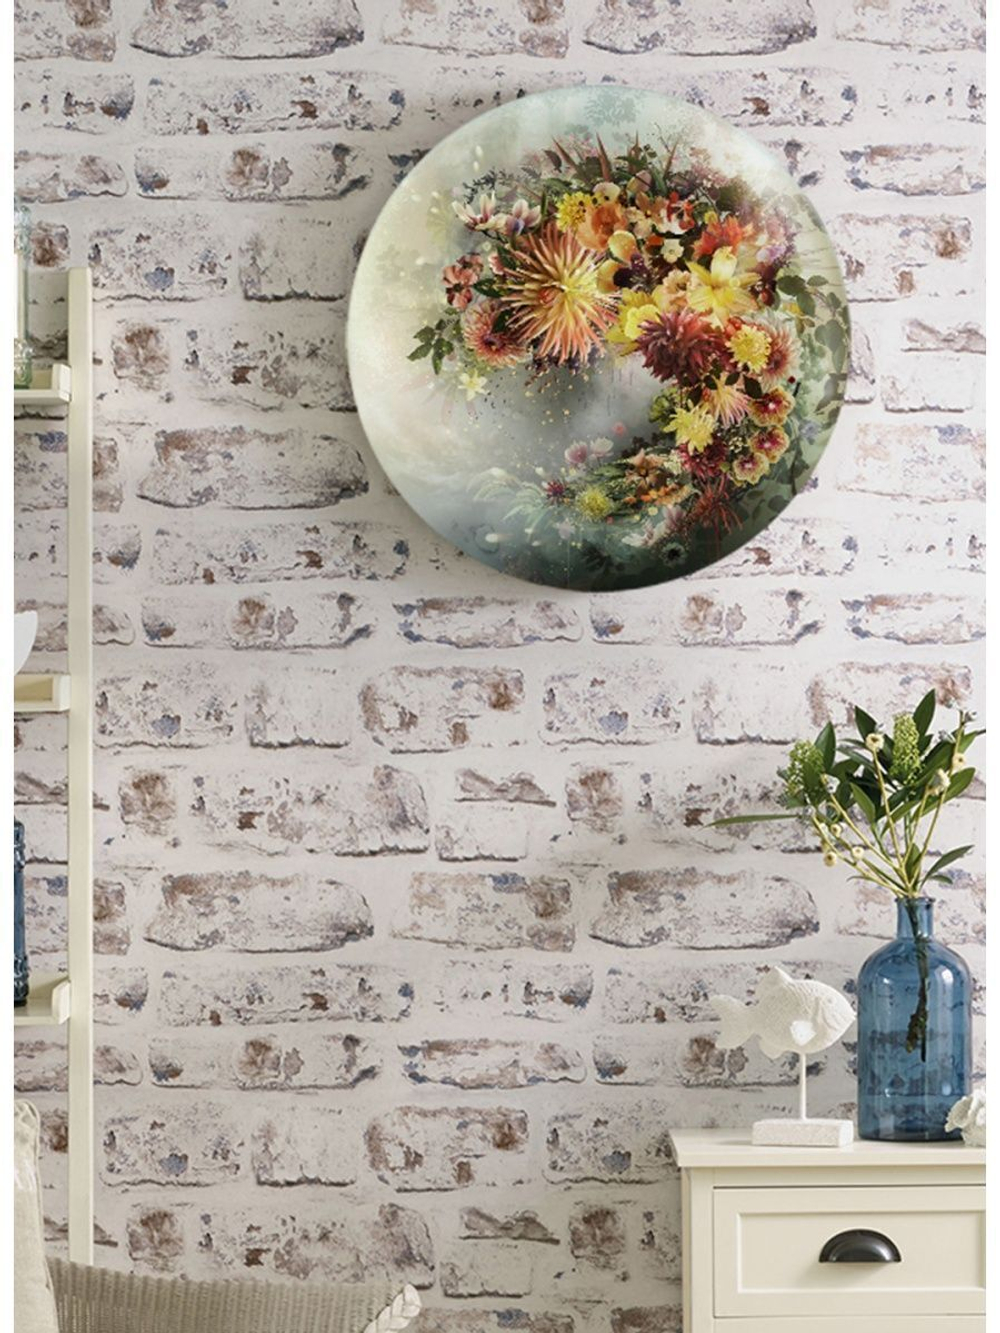 Картина на стекле тондо для интерьера круглая "Цветы тондо 2", диаметр 28 см